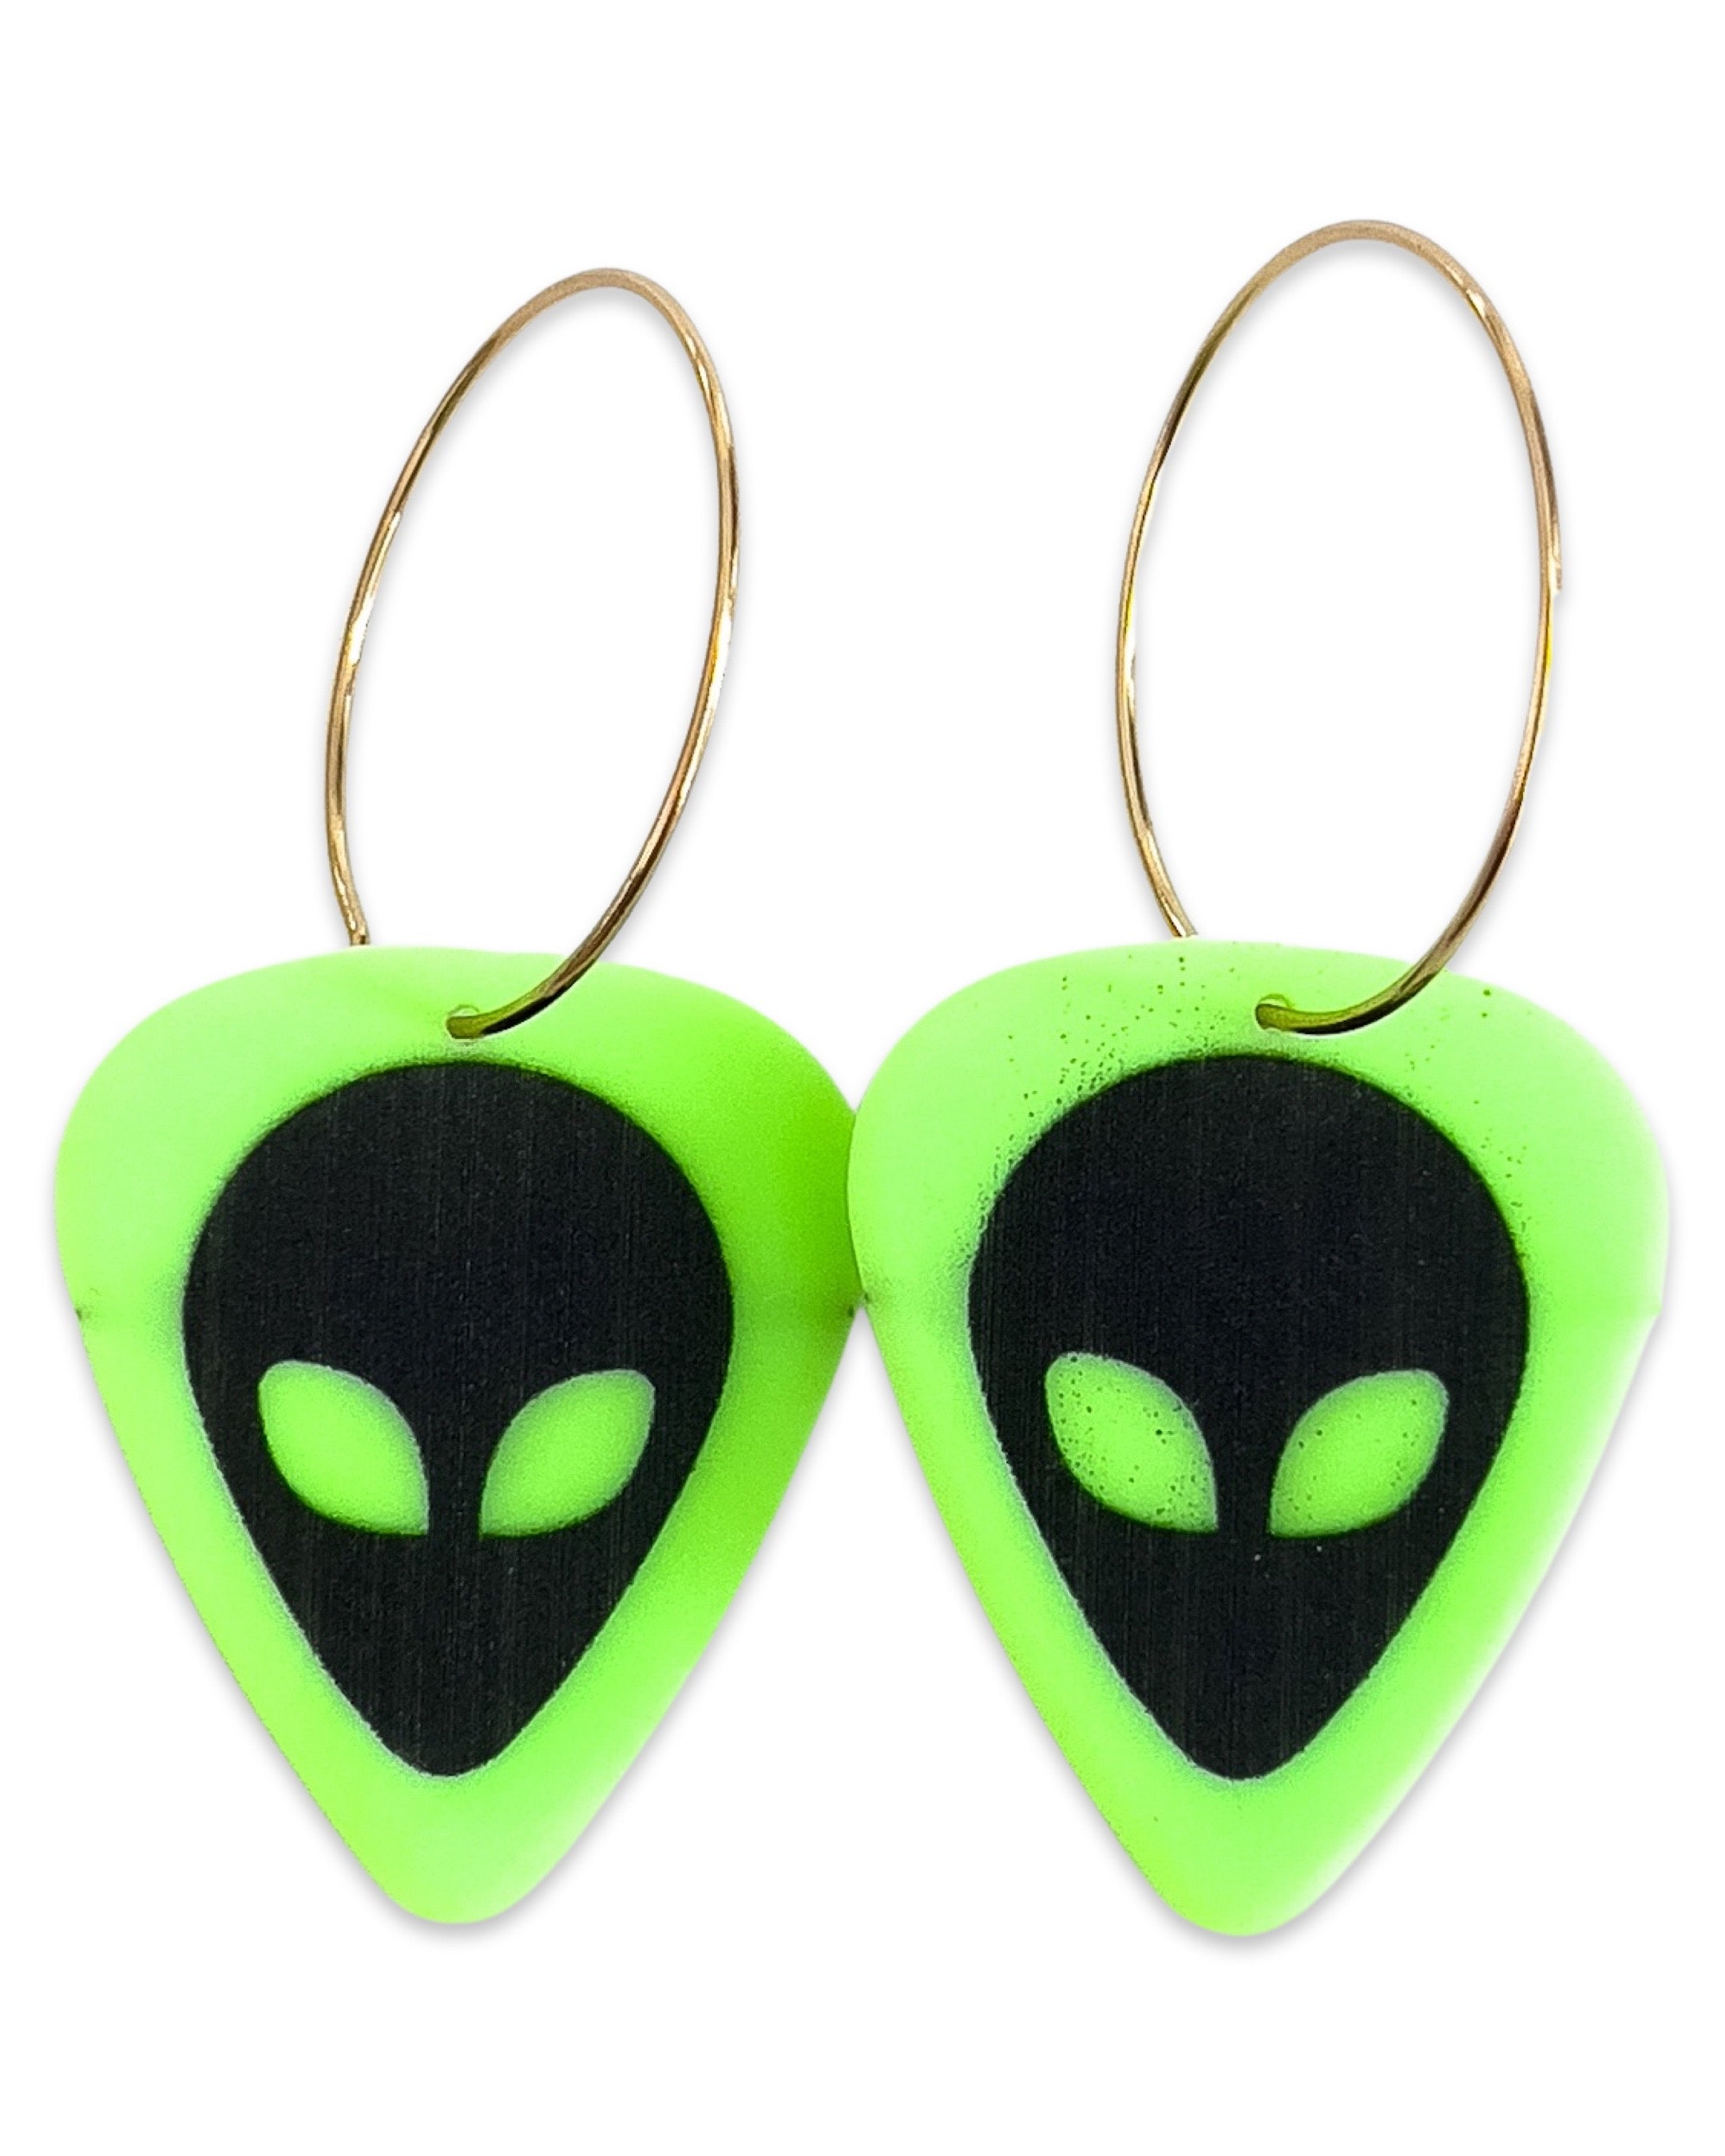 Groupie Love Alien Neon Green Single Guitar Pick Earrings